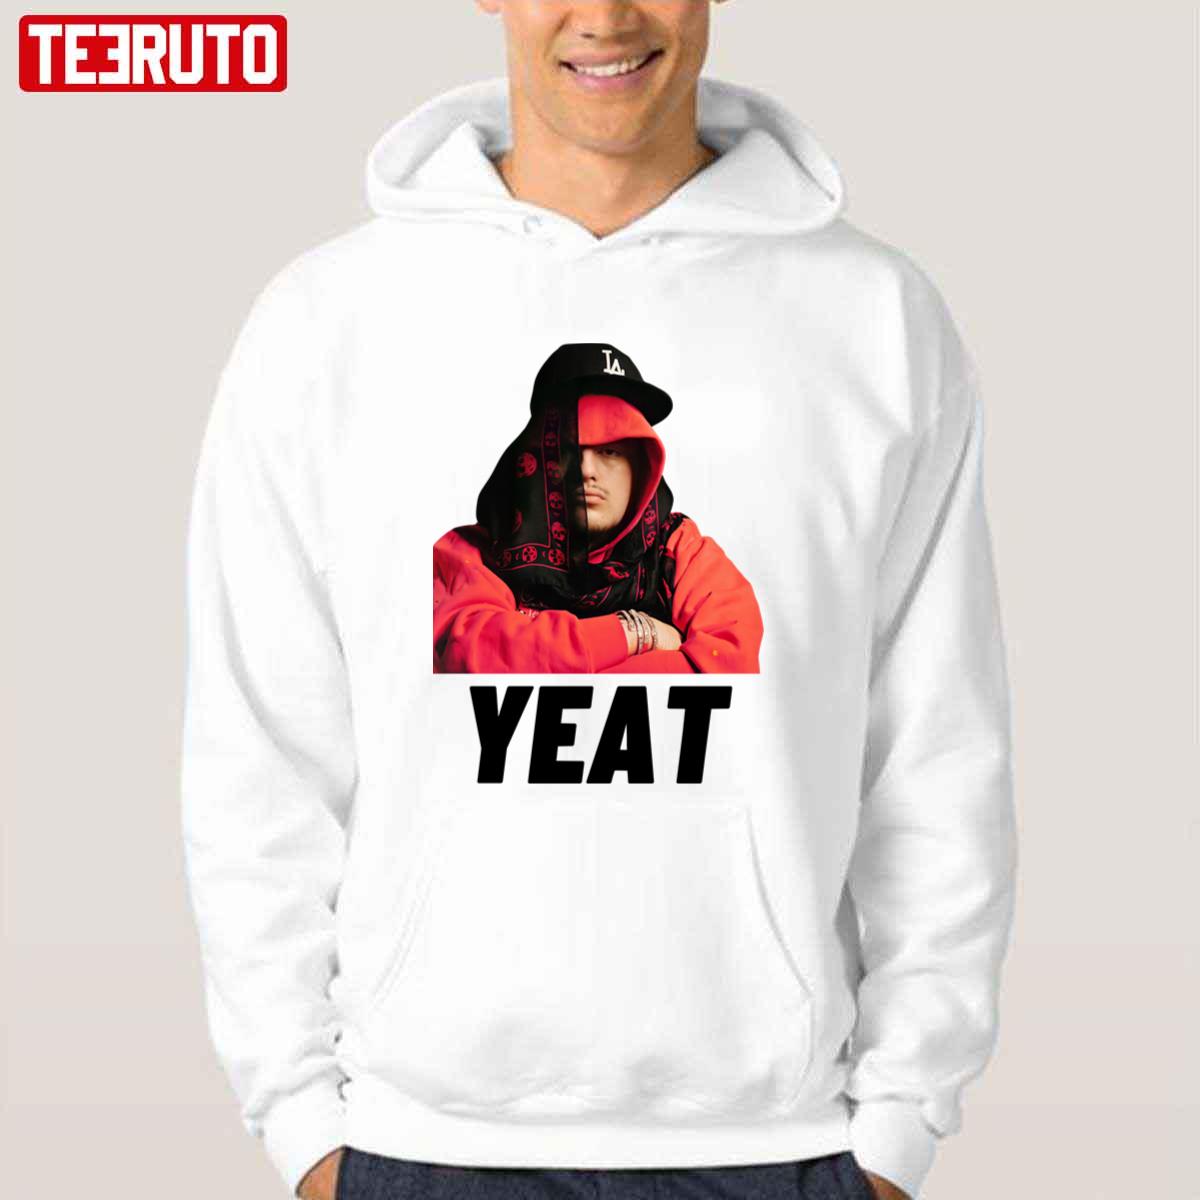 Swag Yeat Unisex T-shirt - Teeruto